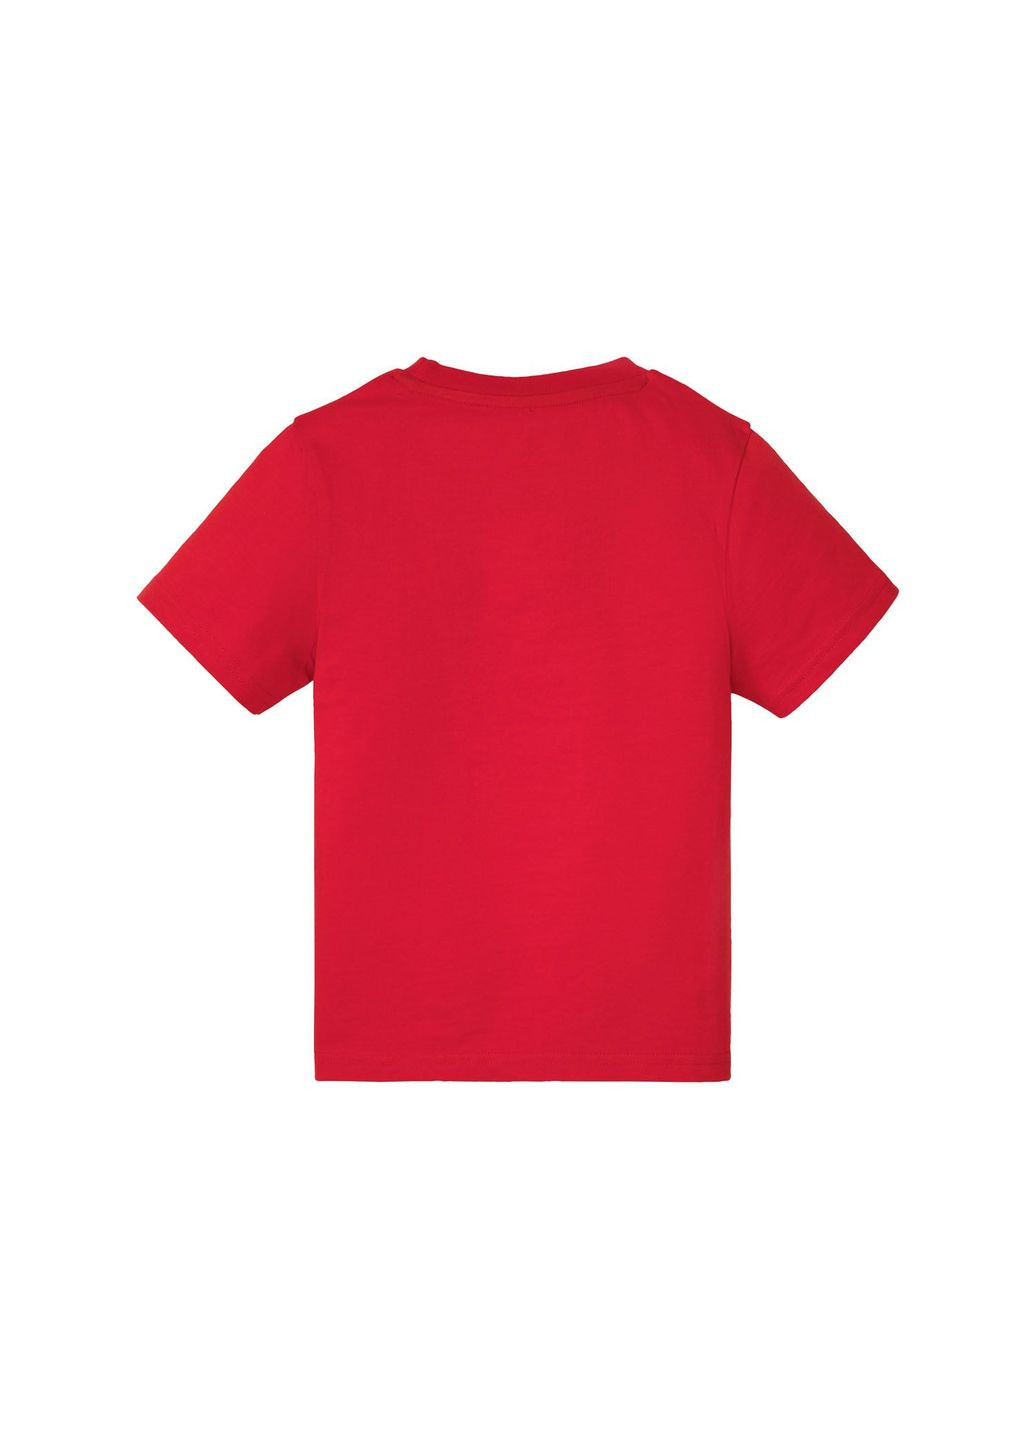 Червона піжама (футболка і шорти) для хлопчика nasa 349308 червоний Disney